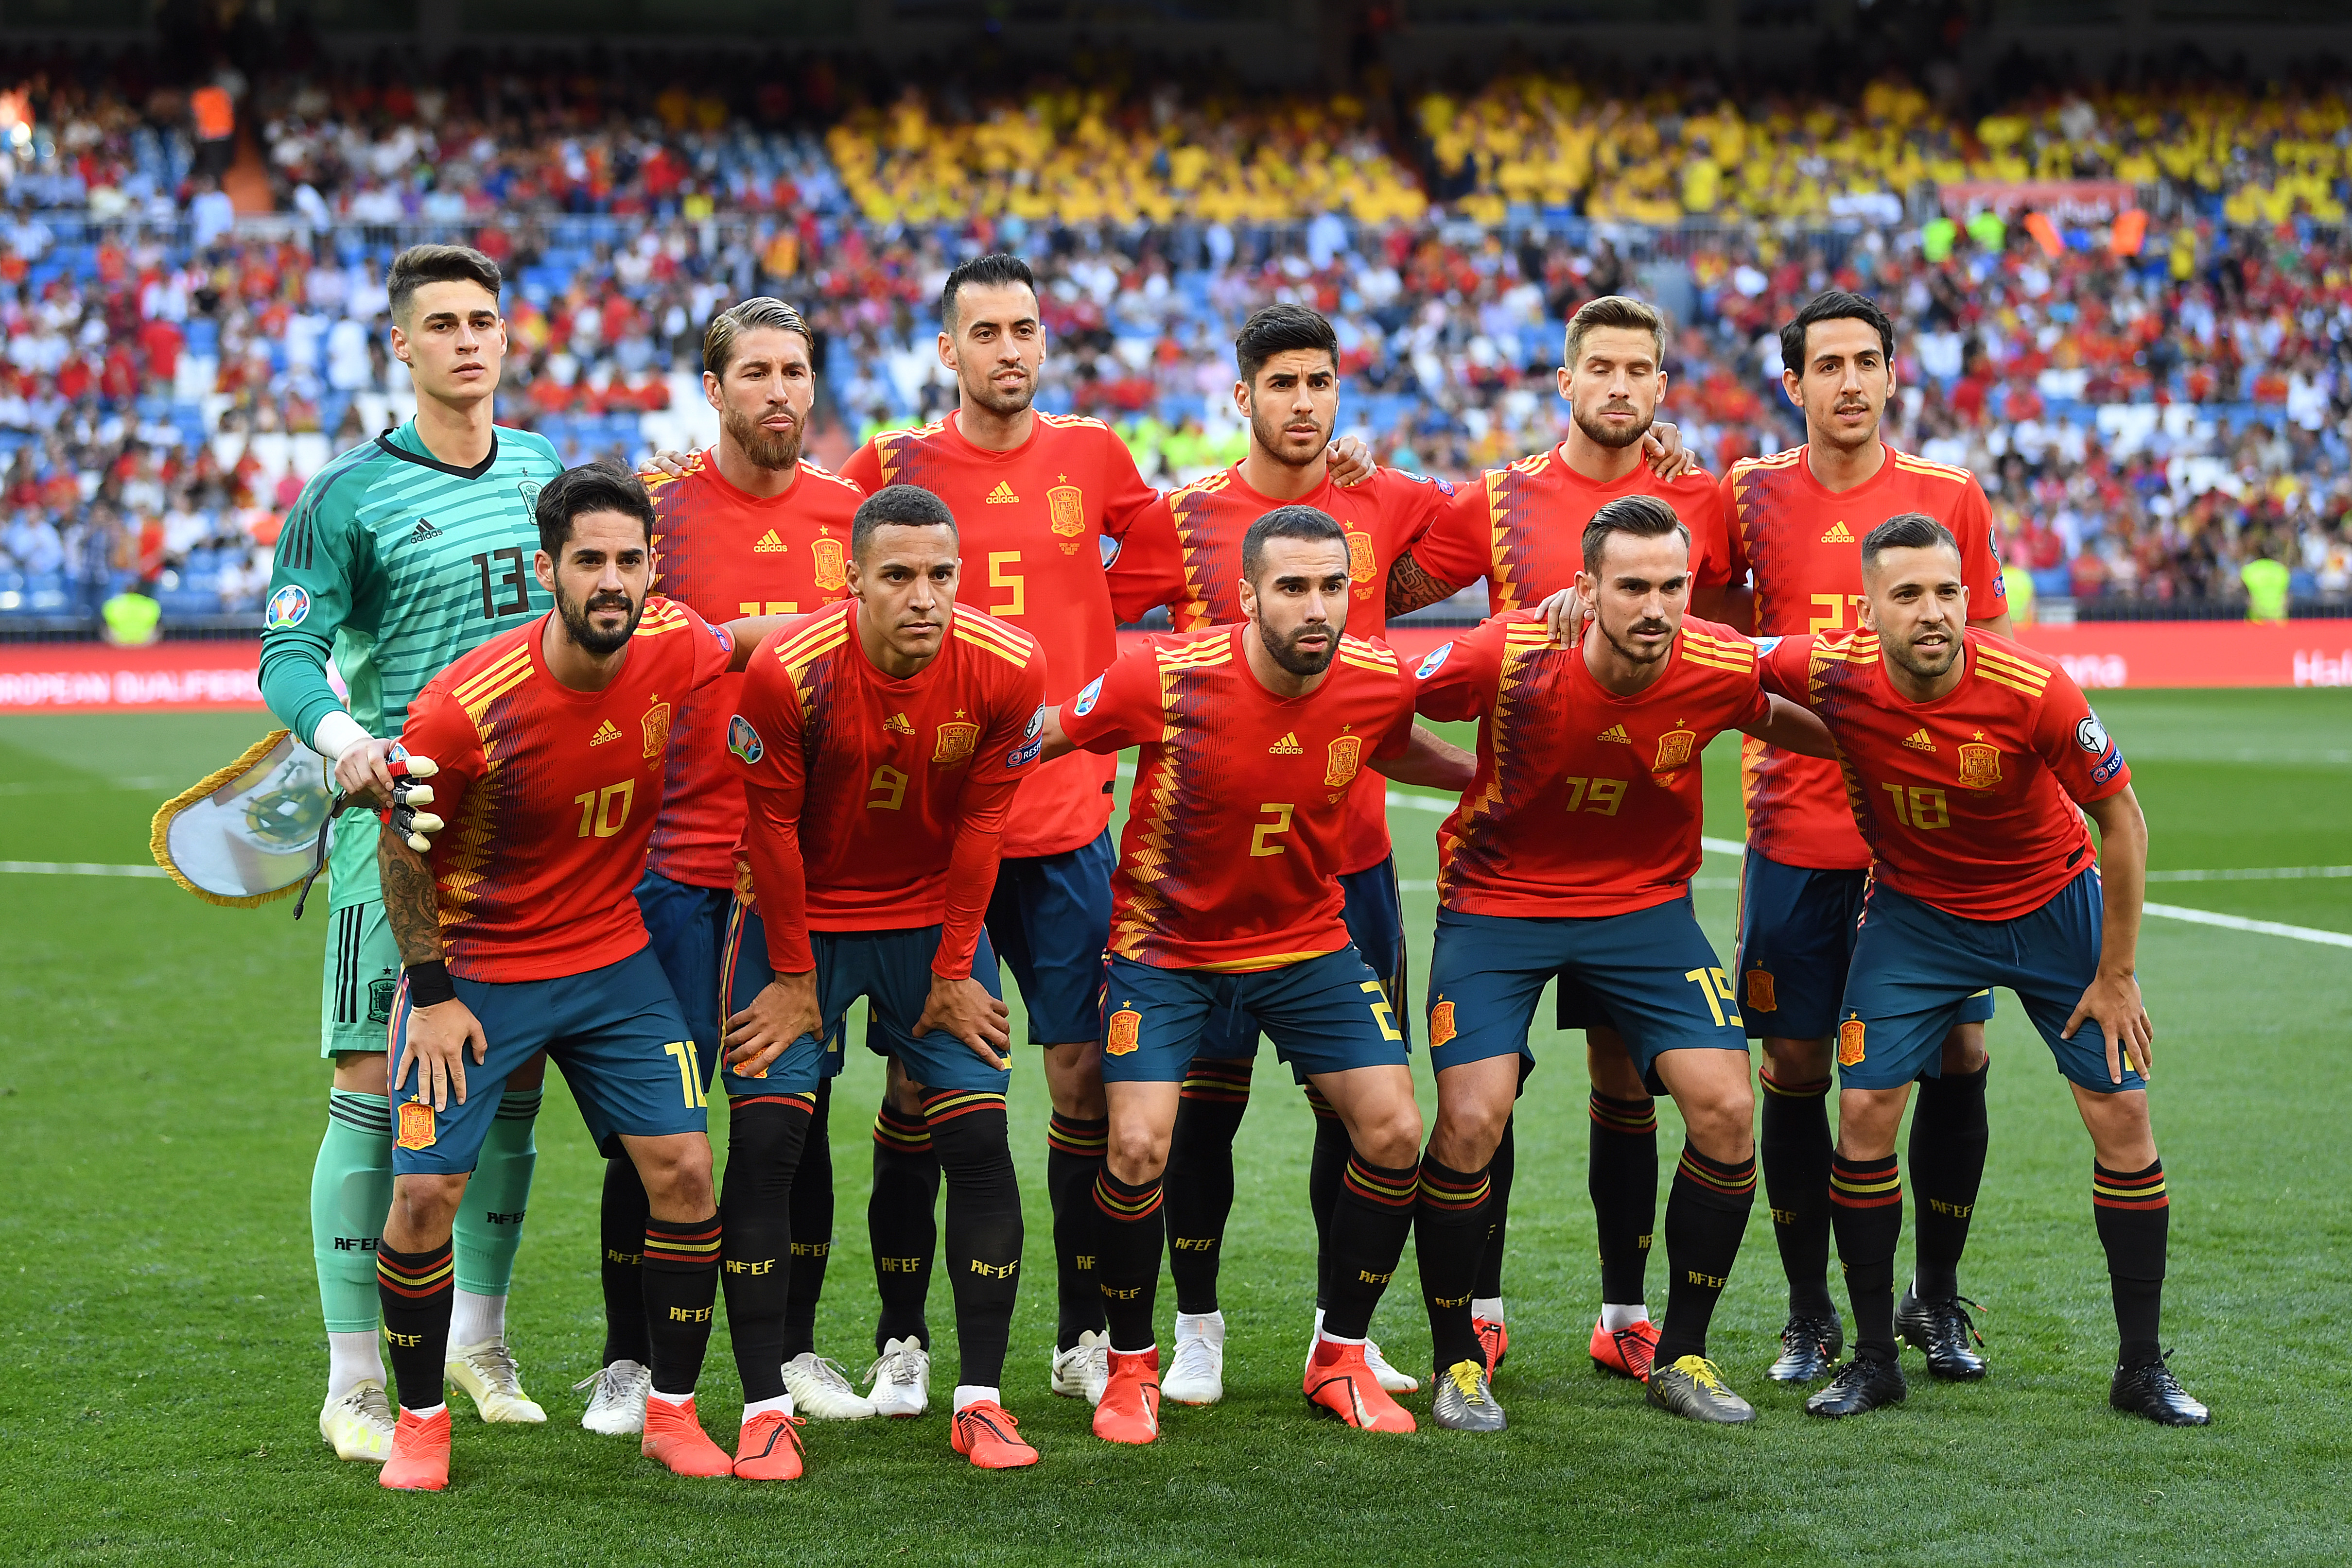 Significativo Variedad Oxidar Una estupidez que quería escribir sobre la selección española | Fútbol -Addict